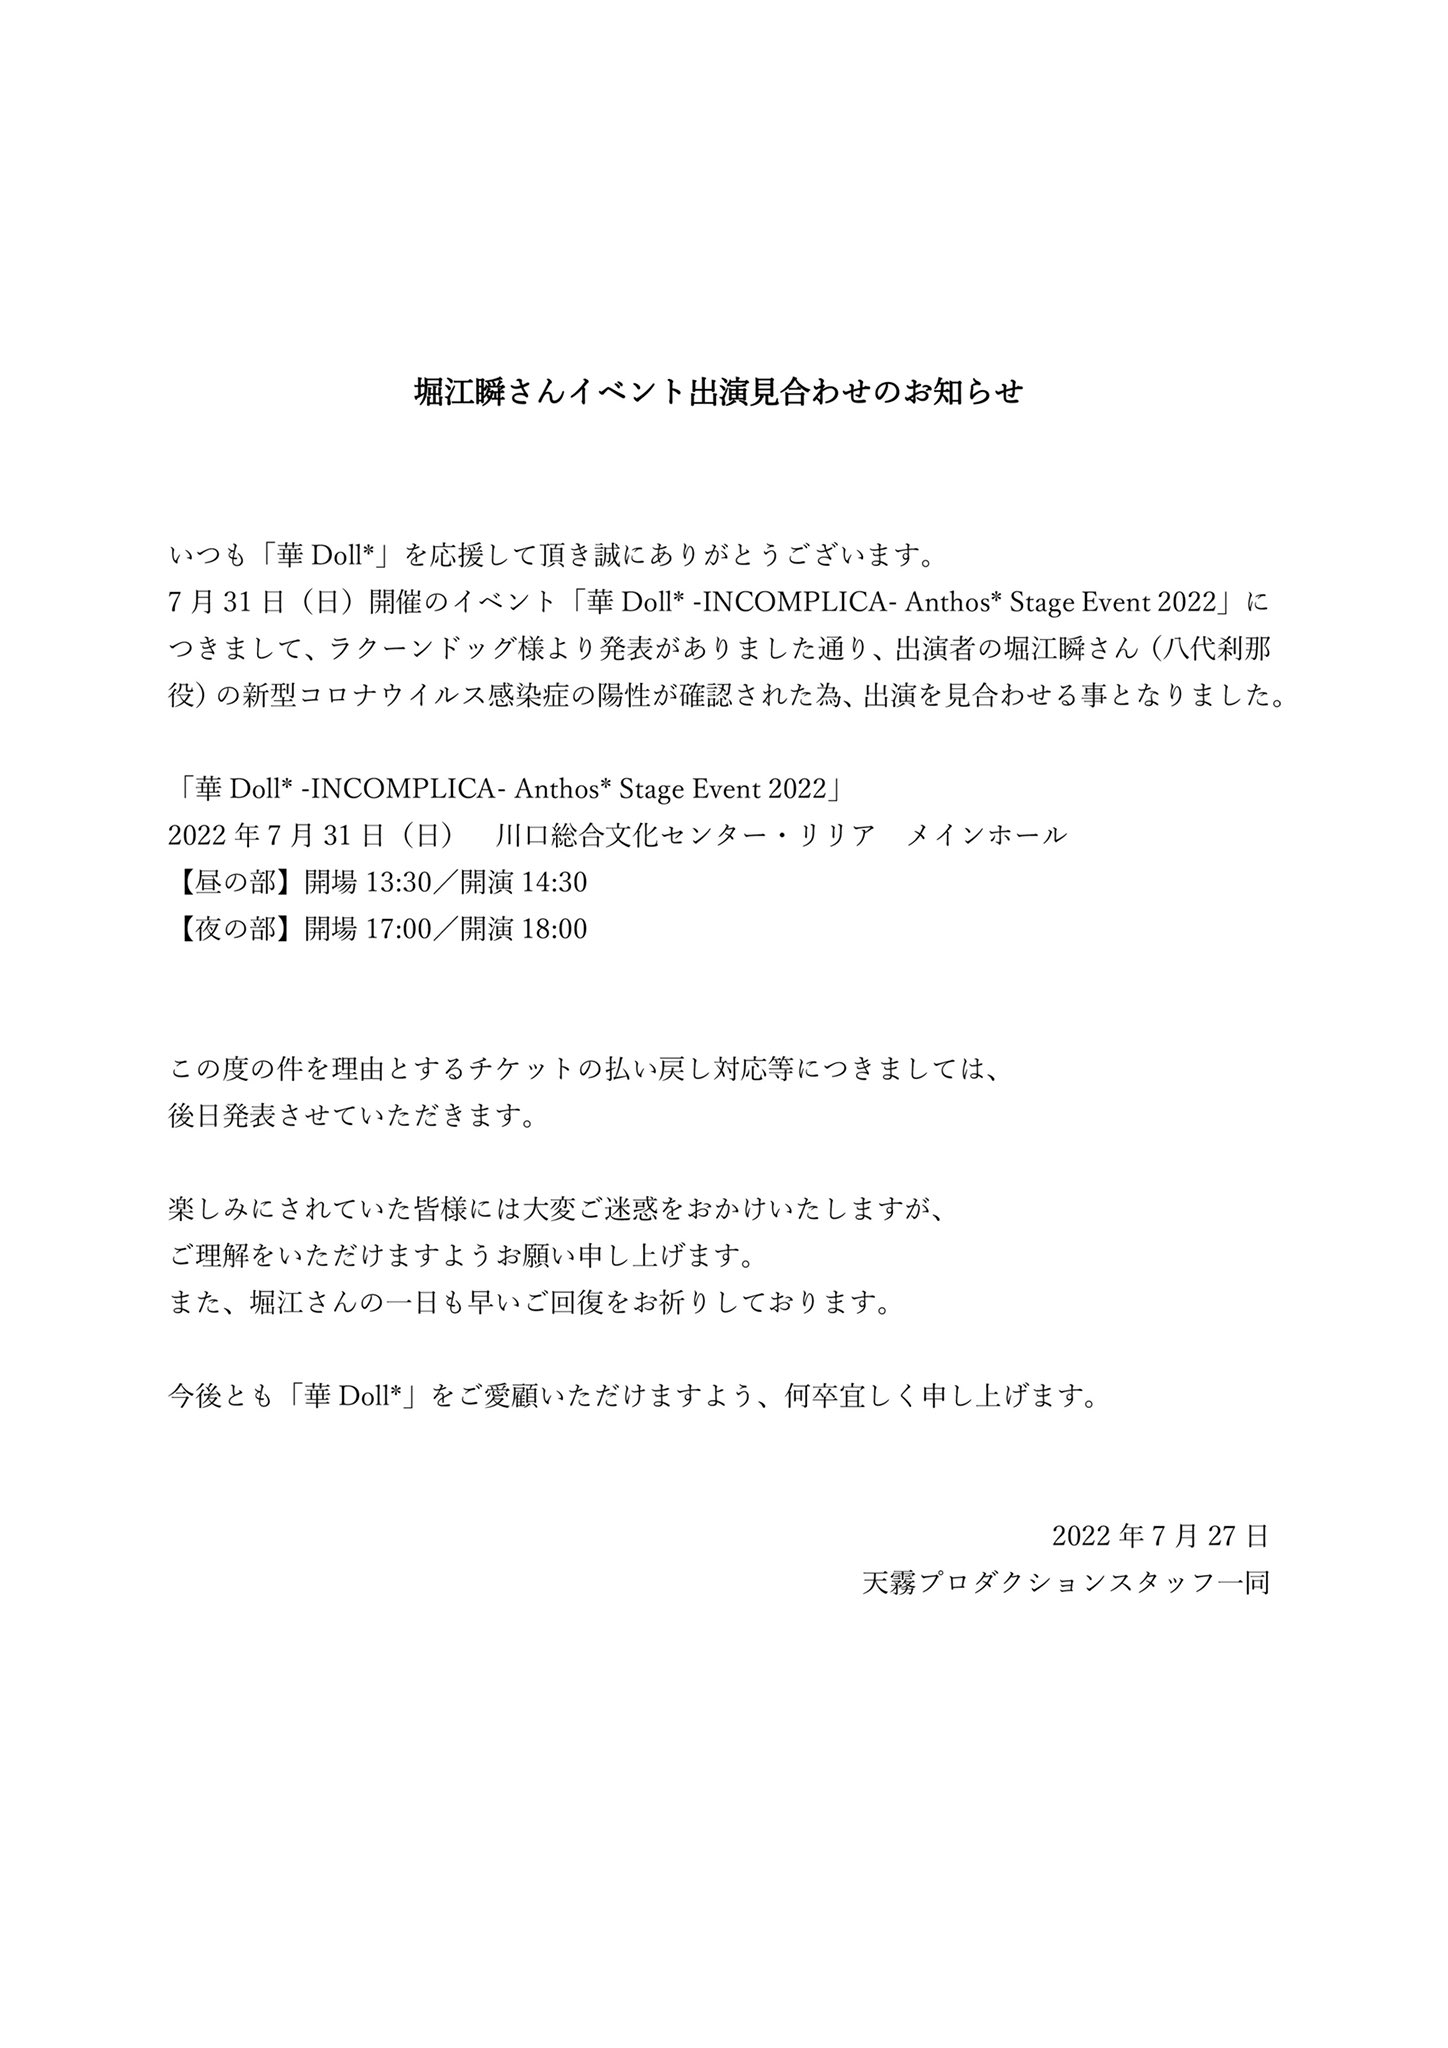 天霧プロダクション_華Doll Official Staff ：公式Twitter「『華Doll* -INCOMPLICA- Anthos* Stage Event 2022』 キャスト出演見合わせのお知らせ」